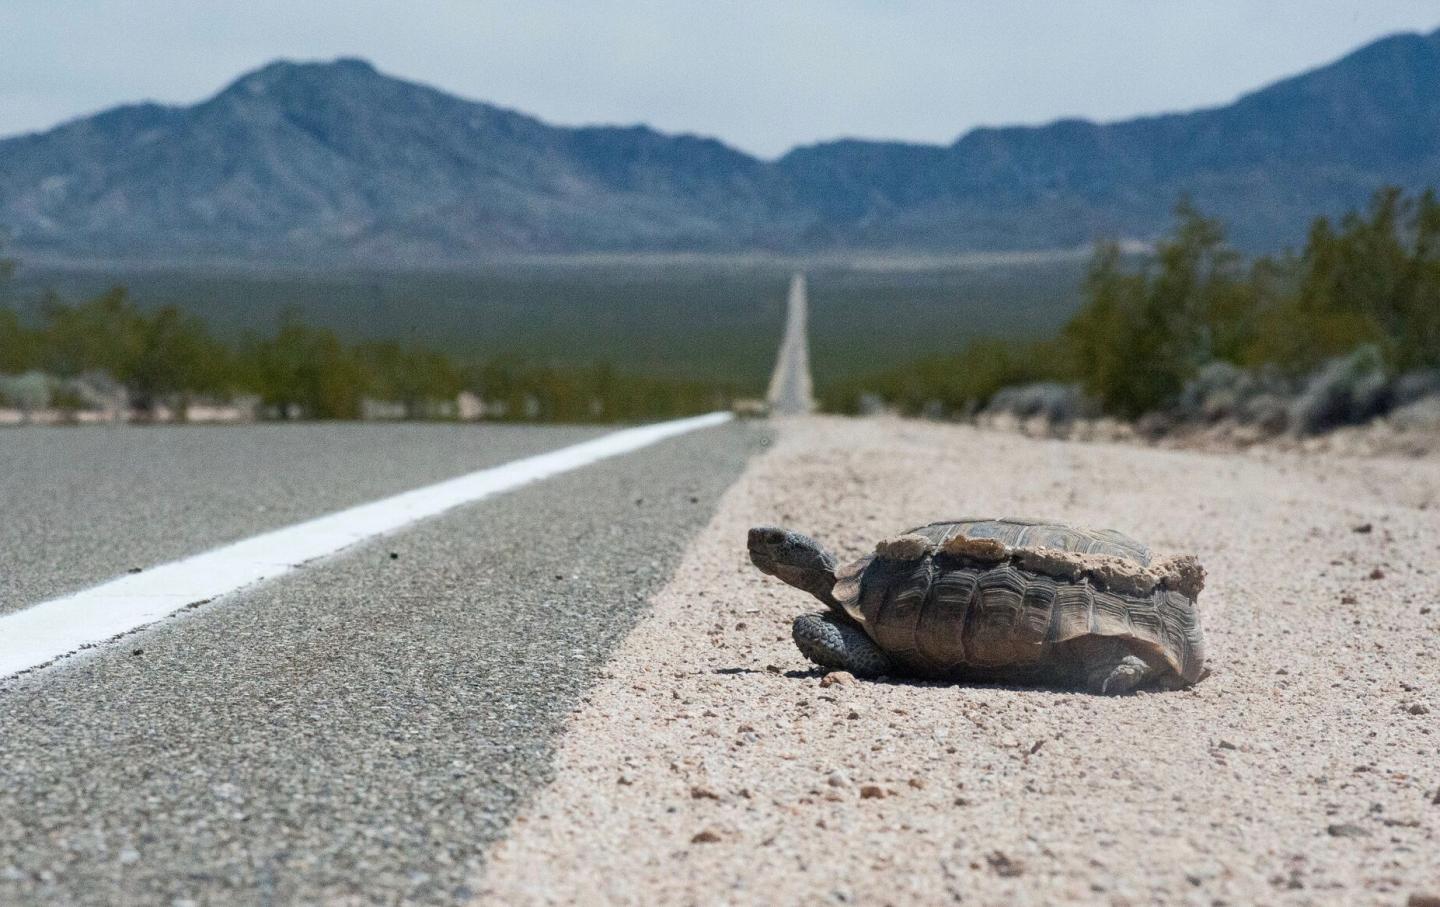 Desert Tortoise at Road